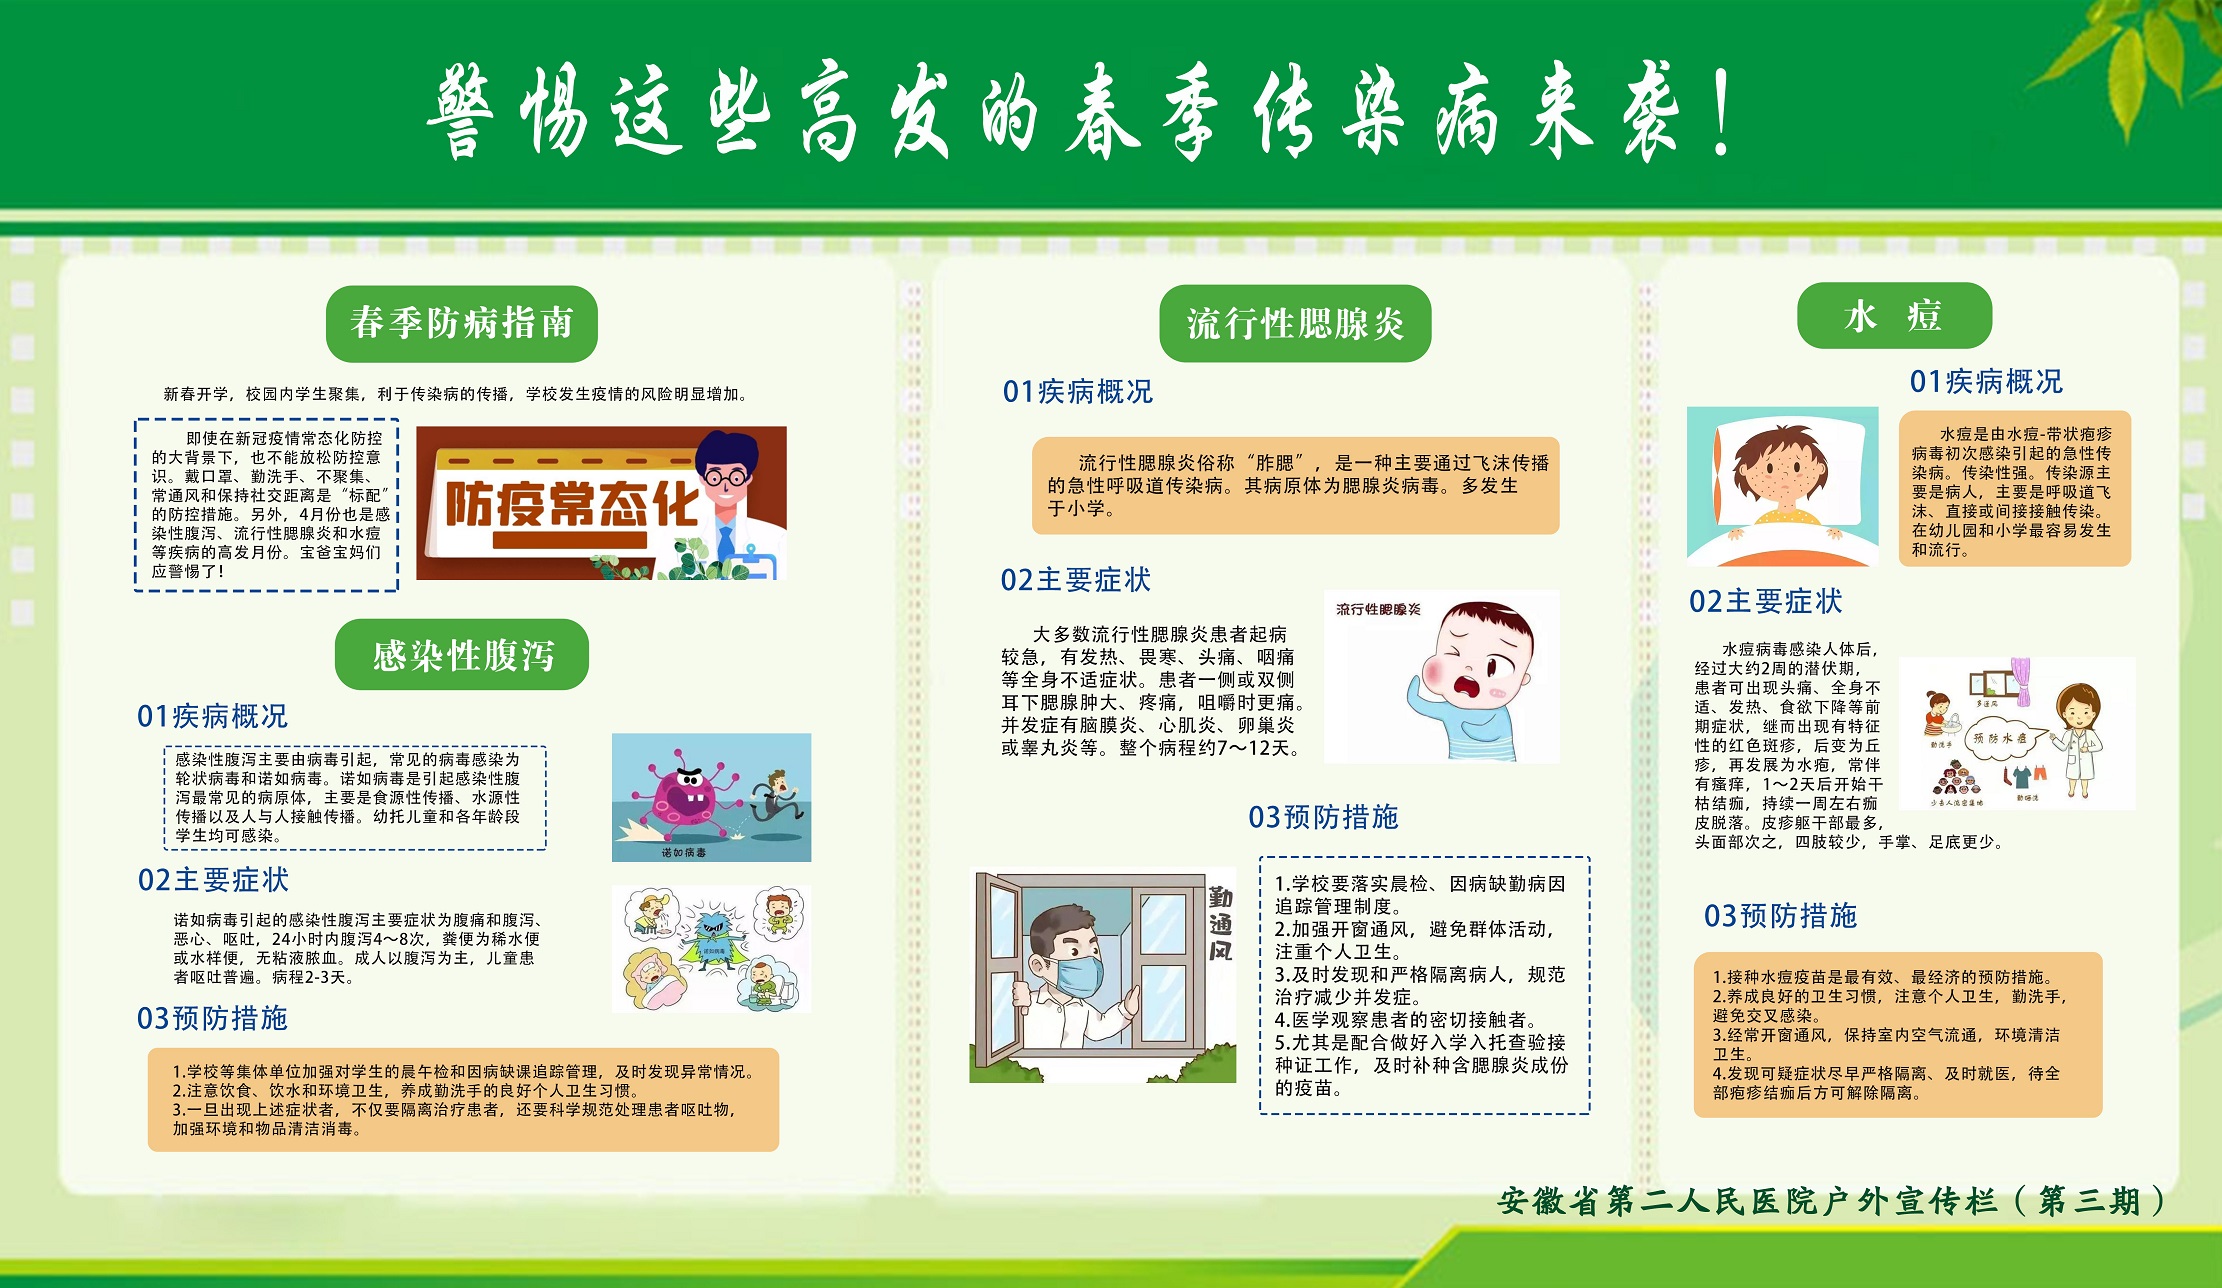 健康科普 | 一图读懂《健康中国健康家——关爱生命科学防癌》